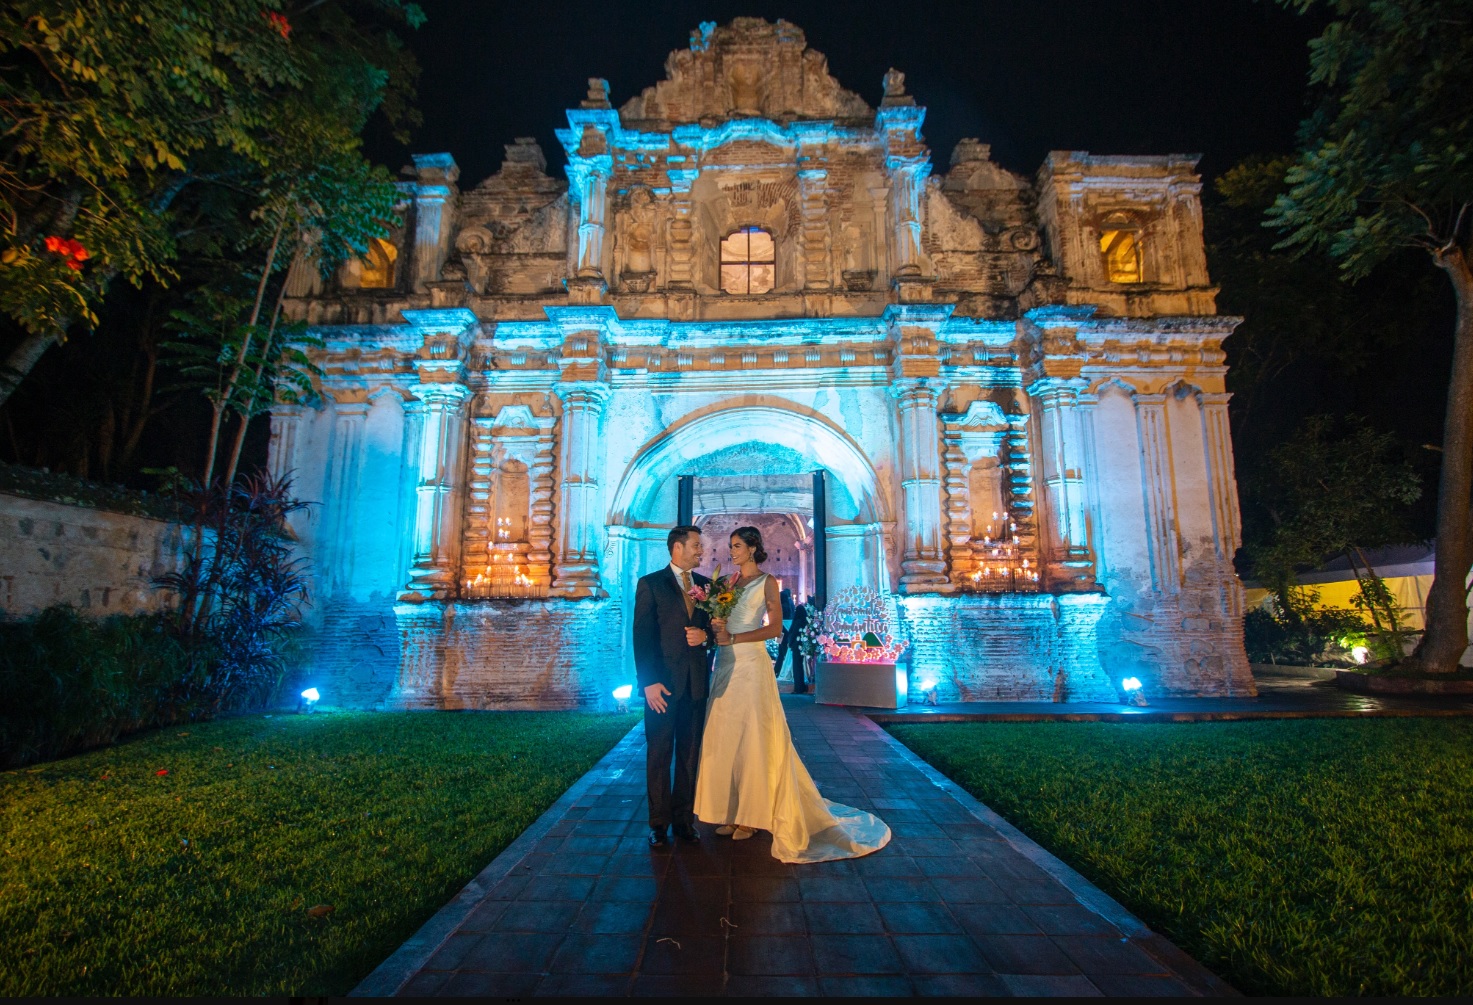 El Salvador, Estados Unidos y México, son los países que generan más turistas en el segmento de bodas de destino.